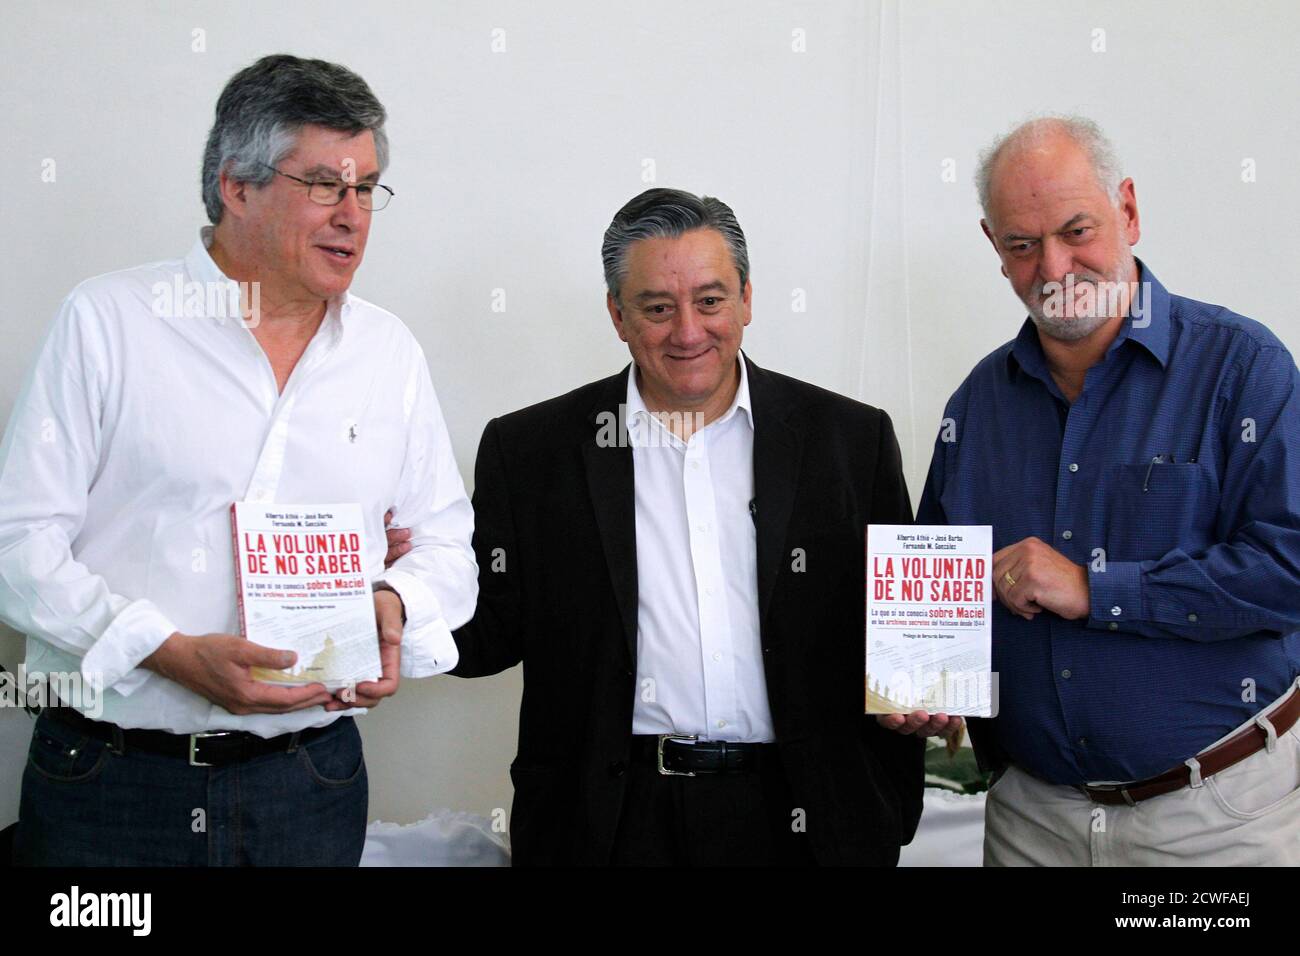 L-R) Fernando Gonzalez, der Religionsforscher Bernardo Barranco und der  ehemalige Priester Alberto Athie posieren für Bilder während der  Präsentation des Buches "La voluntad de no Säbel" (der Wille nicht zu  wissen) in